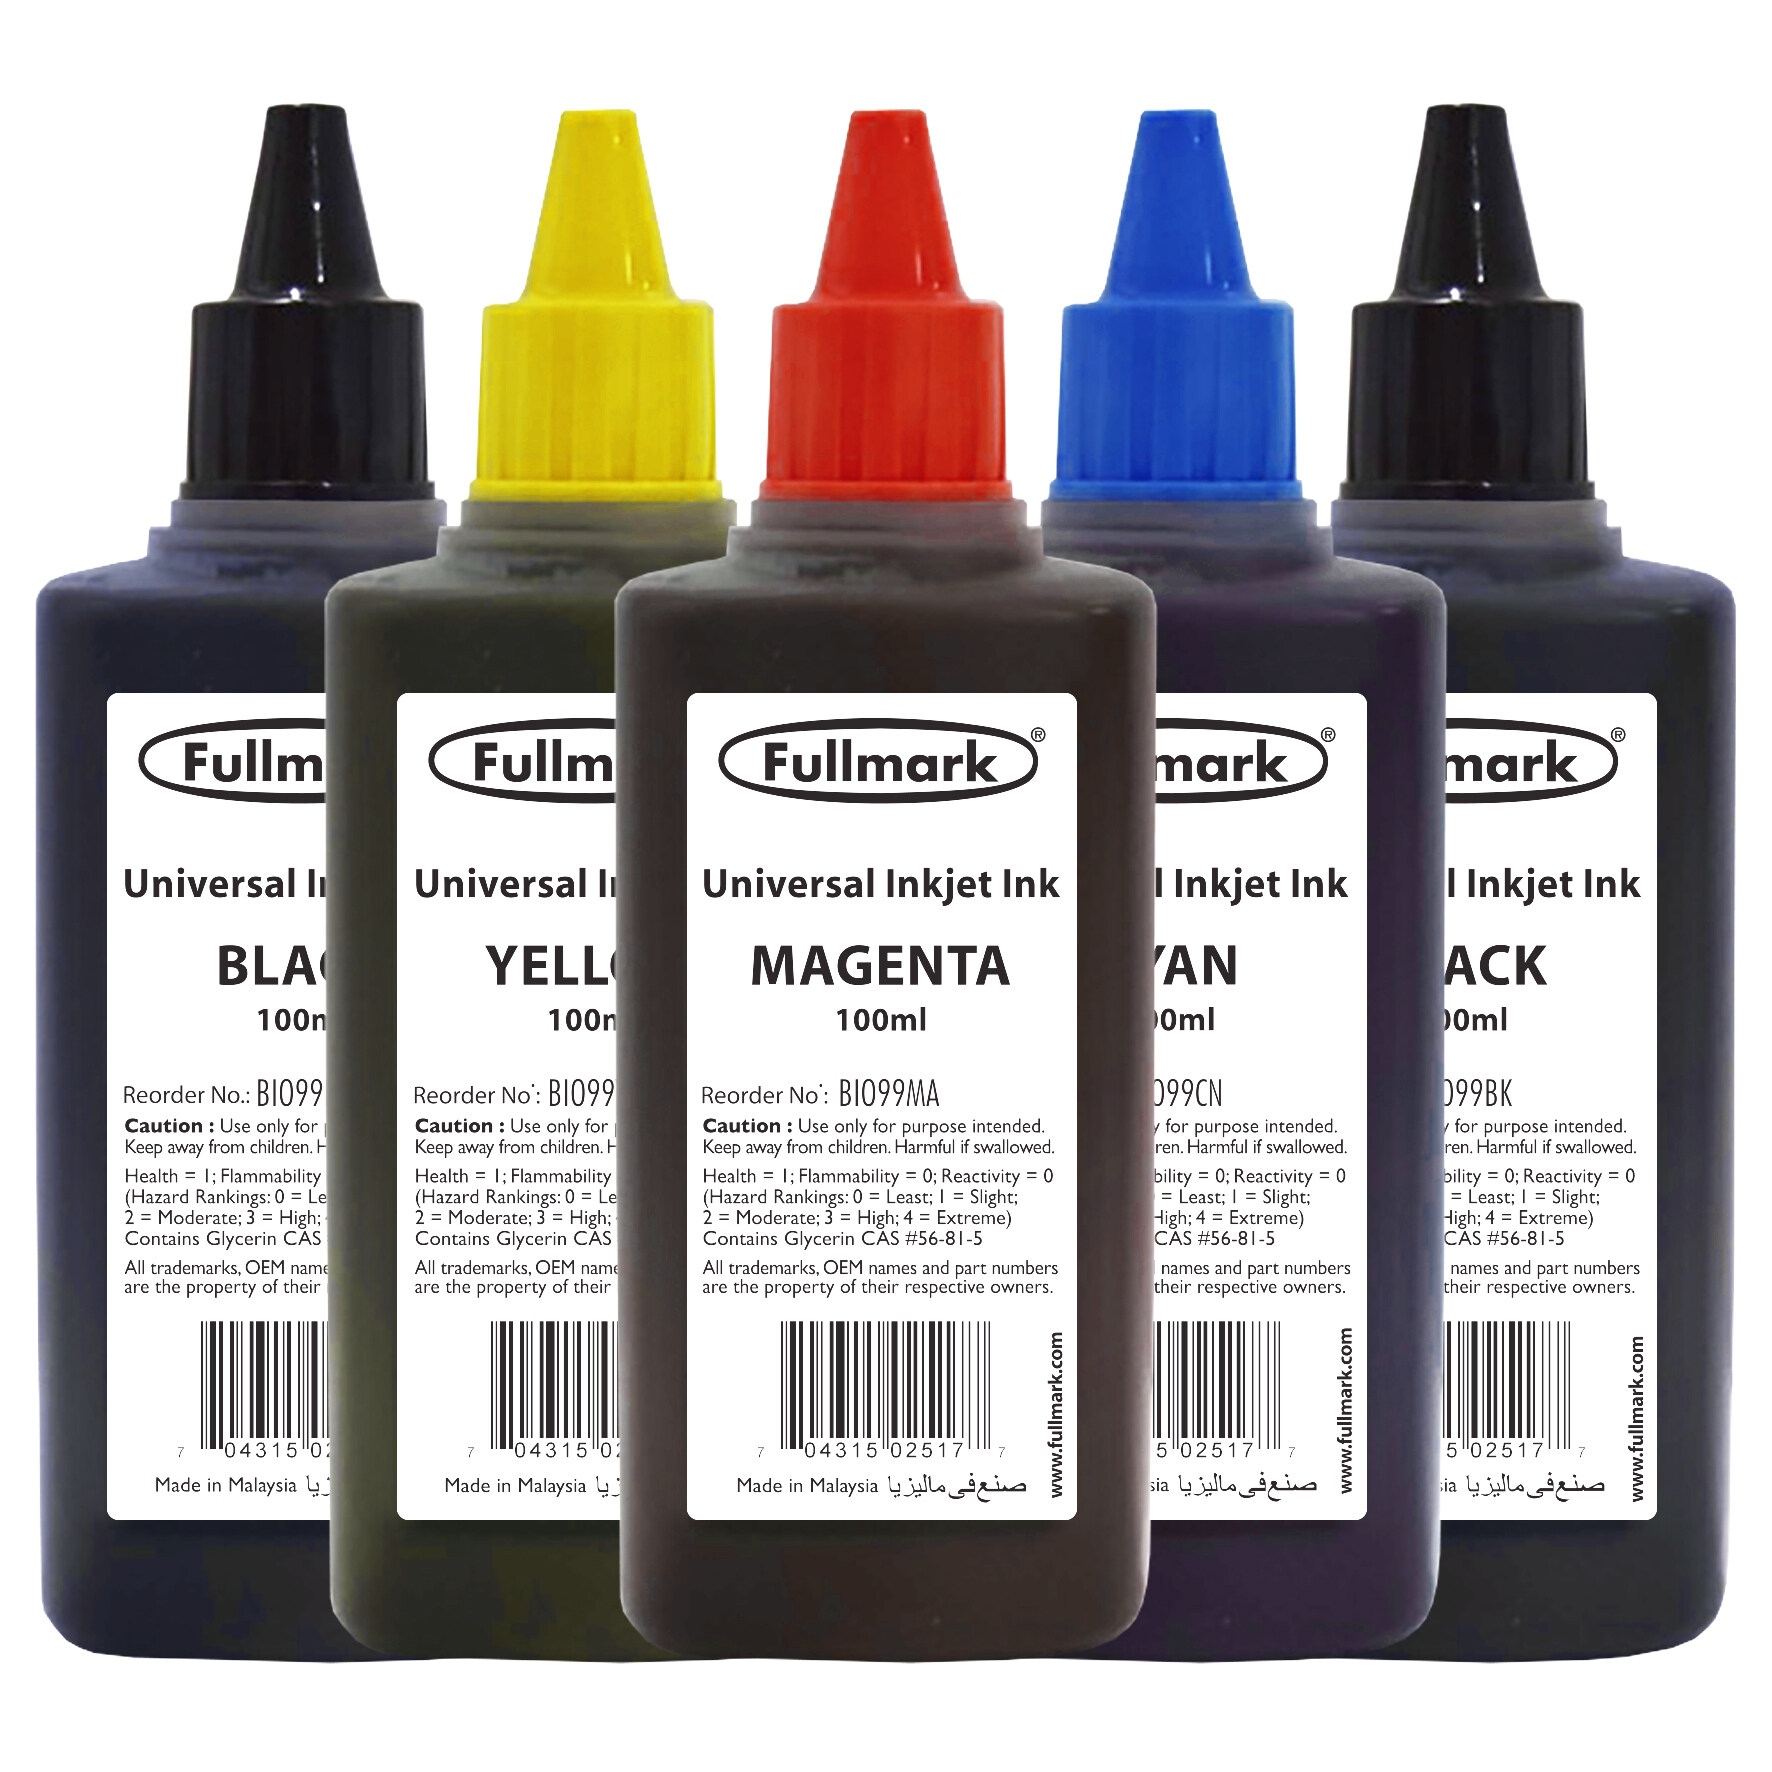 Fullmark Universal Inkjet Ink Refill for HP / Canon / Epson / Brother / Lexmark Printer 5 x 100ml (BI099)